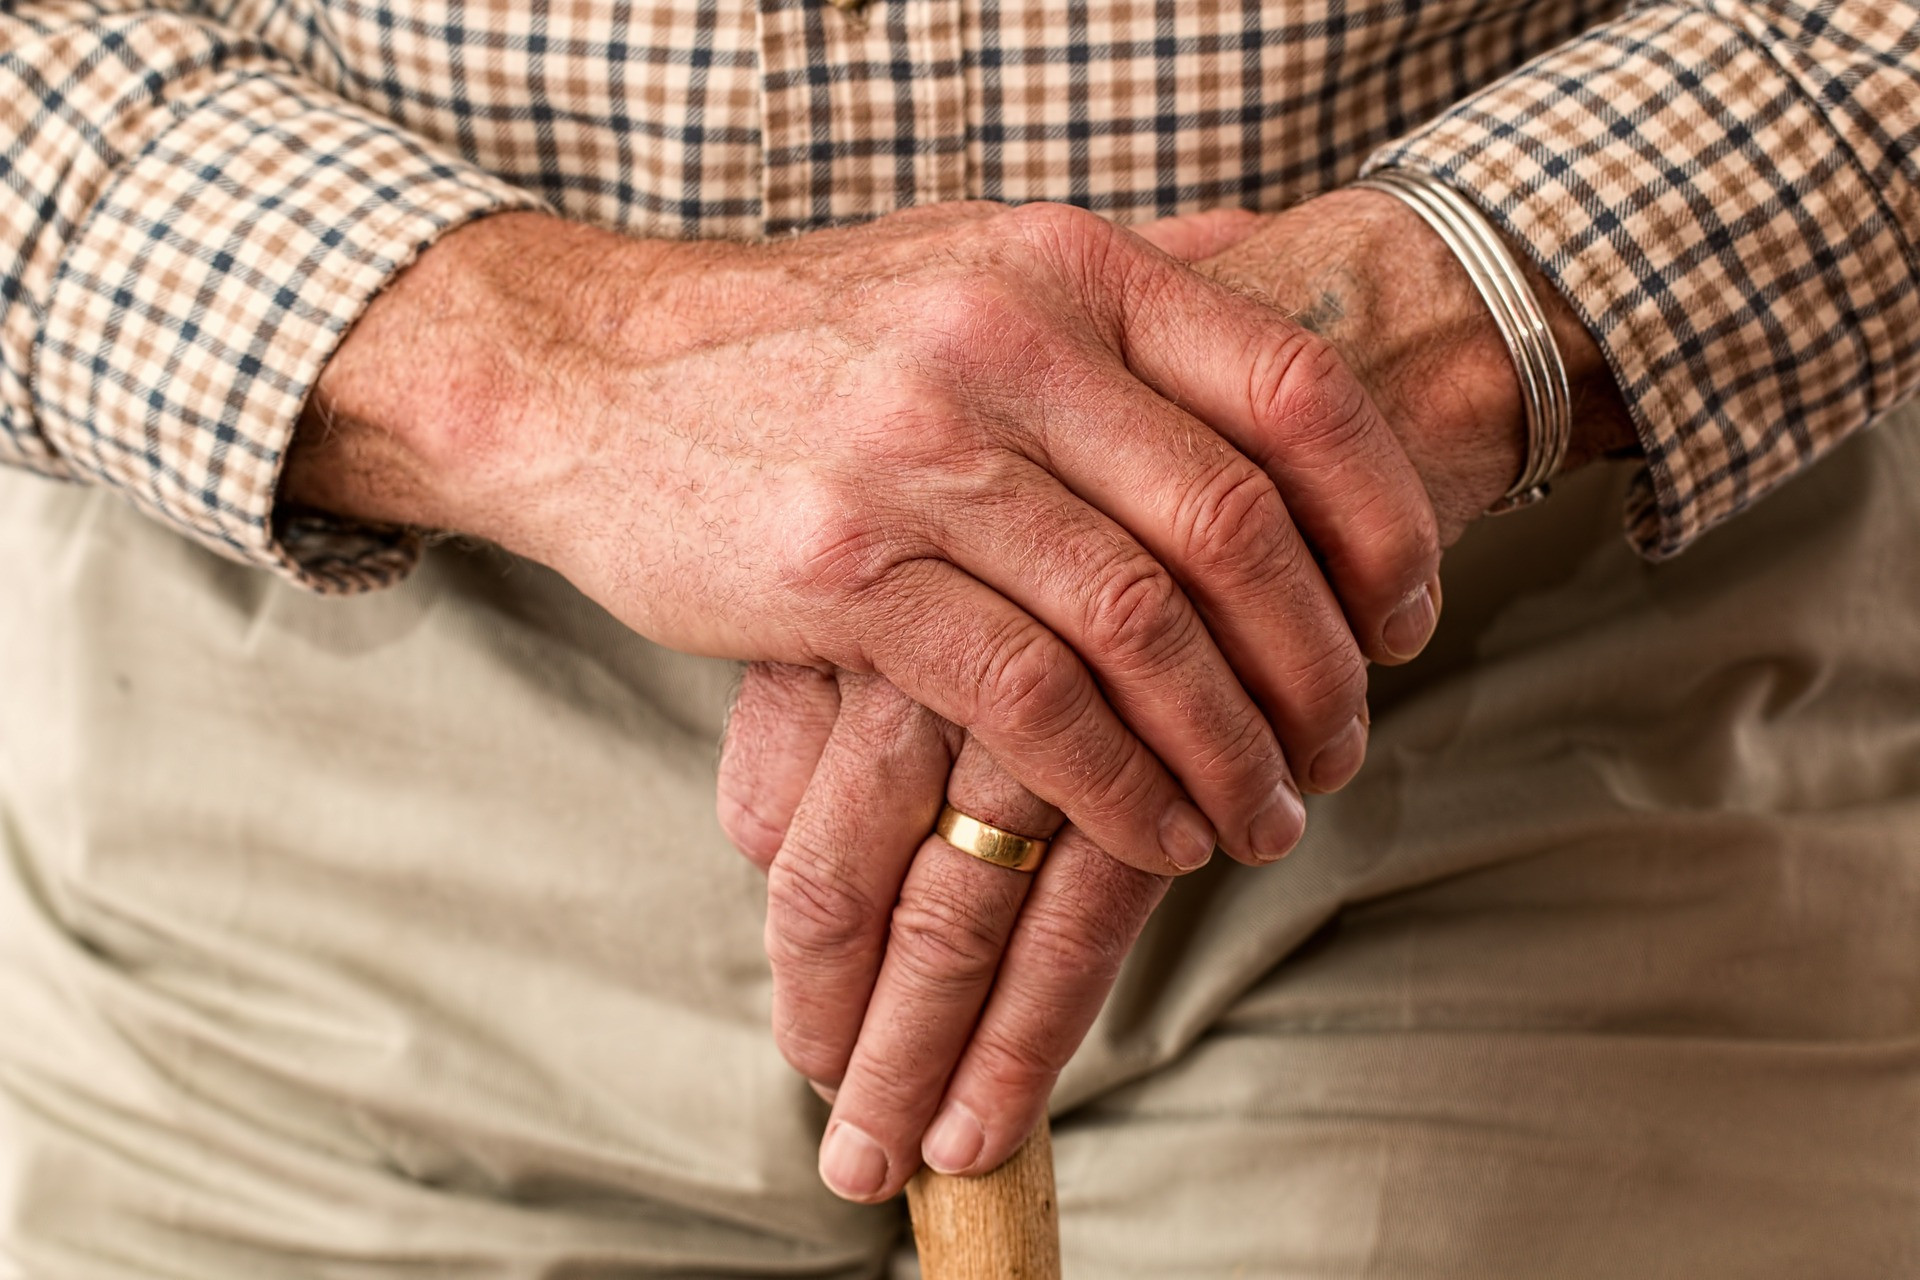 Akého veku sa dožili vaši starí rodičia? Je šanca, že ak v ich prípade išlo o úctyhodný počet rokov, môže to platiť aj pre vás. Podľa štúdie 2010 uverejnenej v časopise Science zdravé starnutie môže byť založené na dvoch dôležitých faktorov: genetika a životné prostredie. Pôvodná štúdia sa zamerala na 1055 storočných ľudí a zistila, že môžeme predpovedať dlhú životnosť s takmer 60 až 85 percentnou presnosťou. Ako? Zrejme genetické markery a varianty pomáhajú určiť životnosť napriek faktorov životného prostredia. 